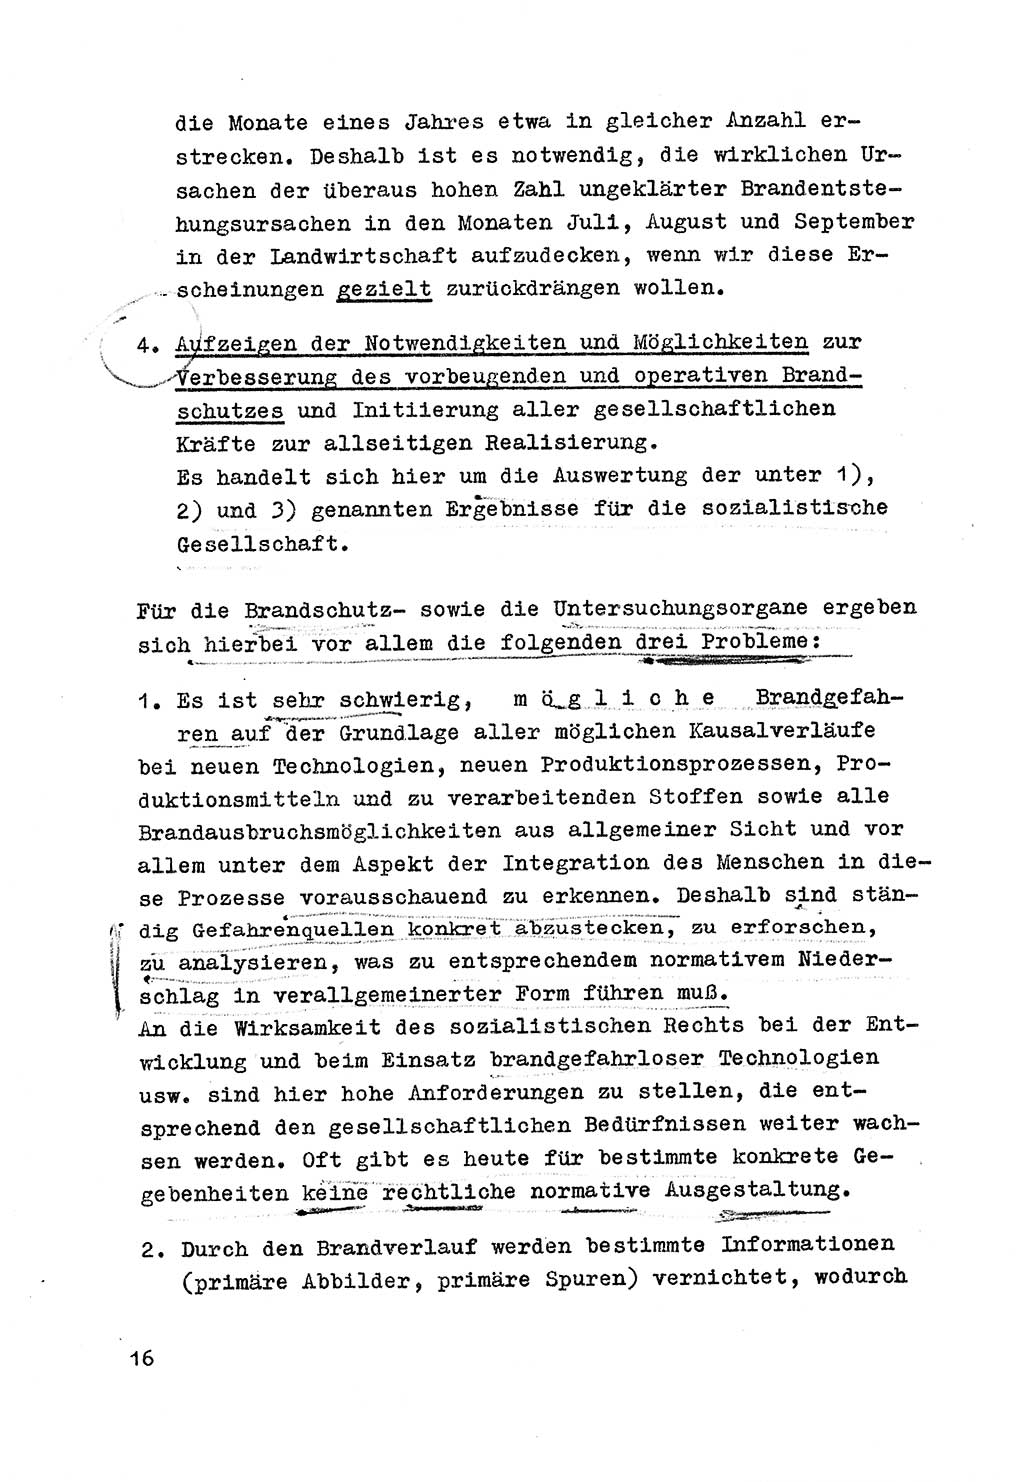 Strafrecht der DDR (Deutsche Demokratische Republik), Besonderer Teil, Lehrmaterial, Heft 7 1970, Seite 16 (Strafr. DDR BT Lehrmat. H. 7 1970, S. 16)